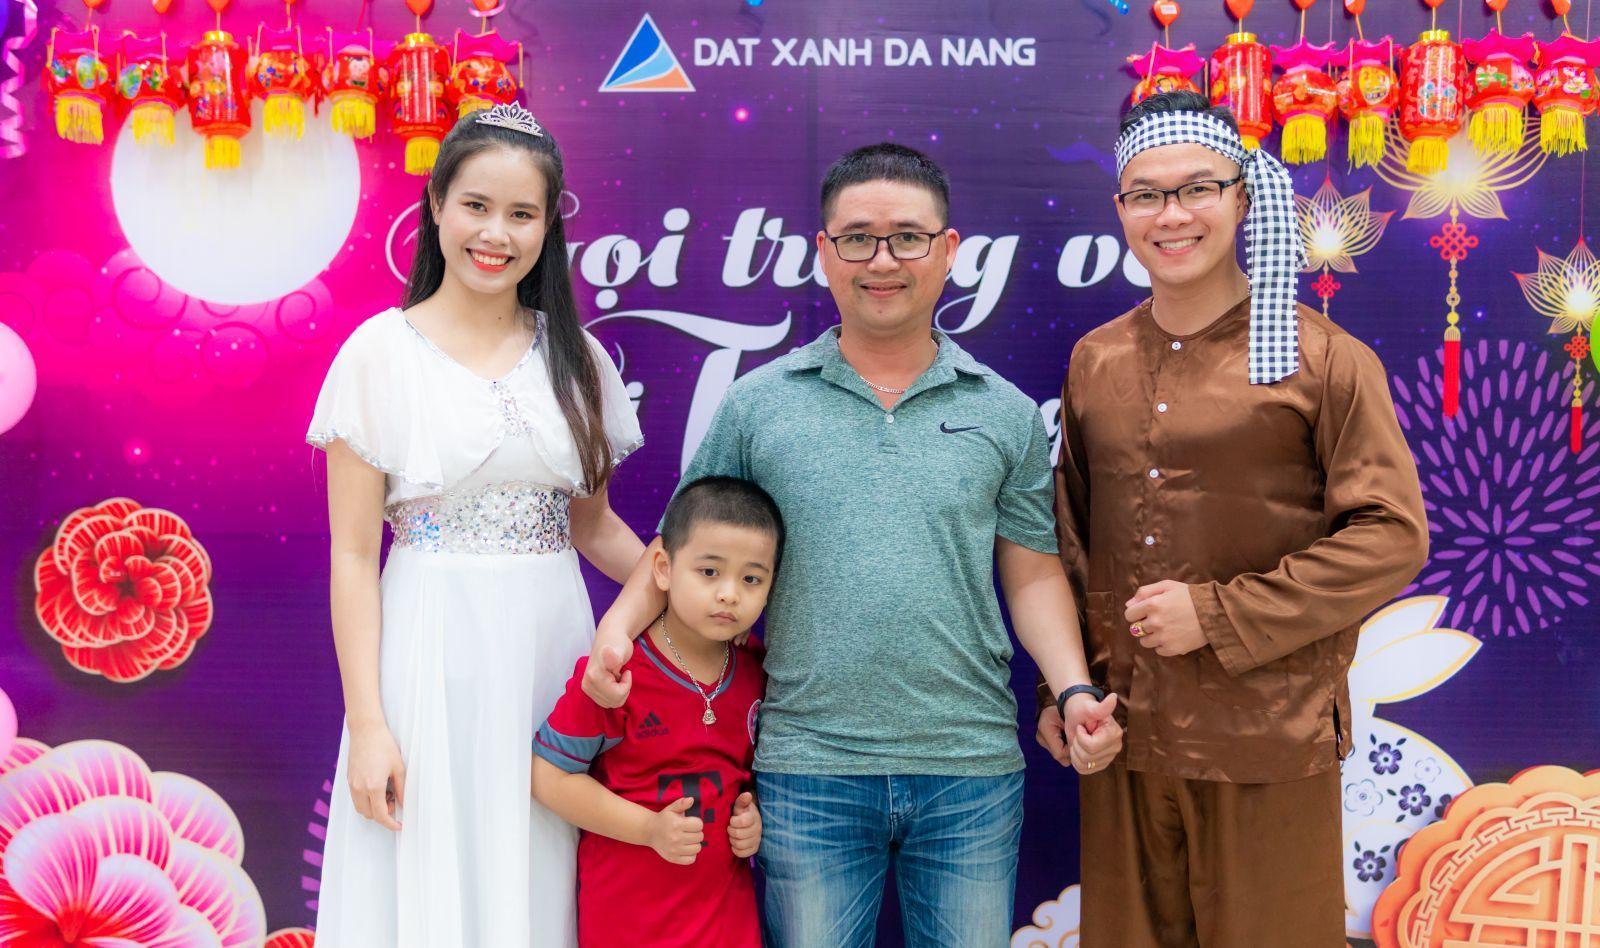 GỌI TRĂNG VỀ VUI TẾT TRUNG THU - Viet Nam Smart City